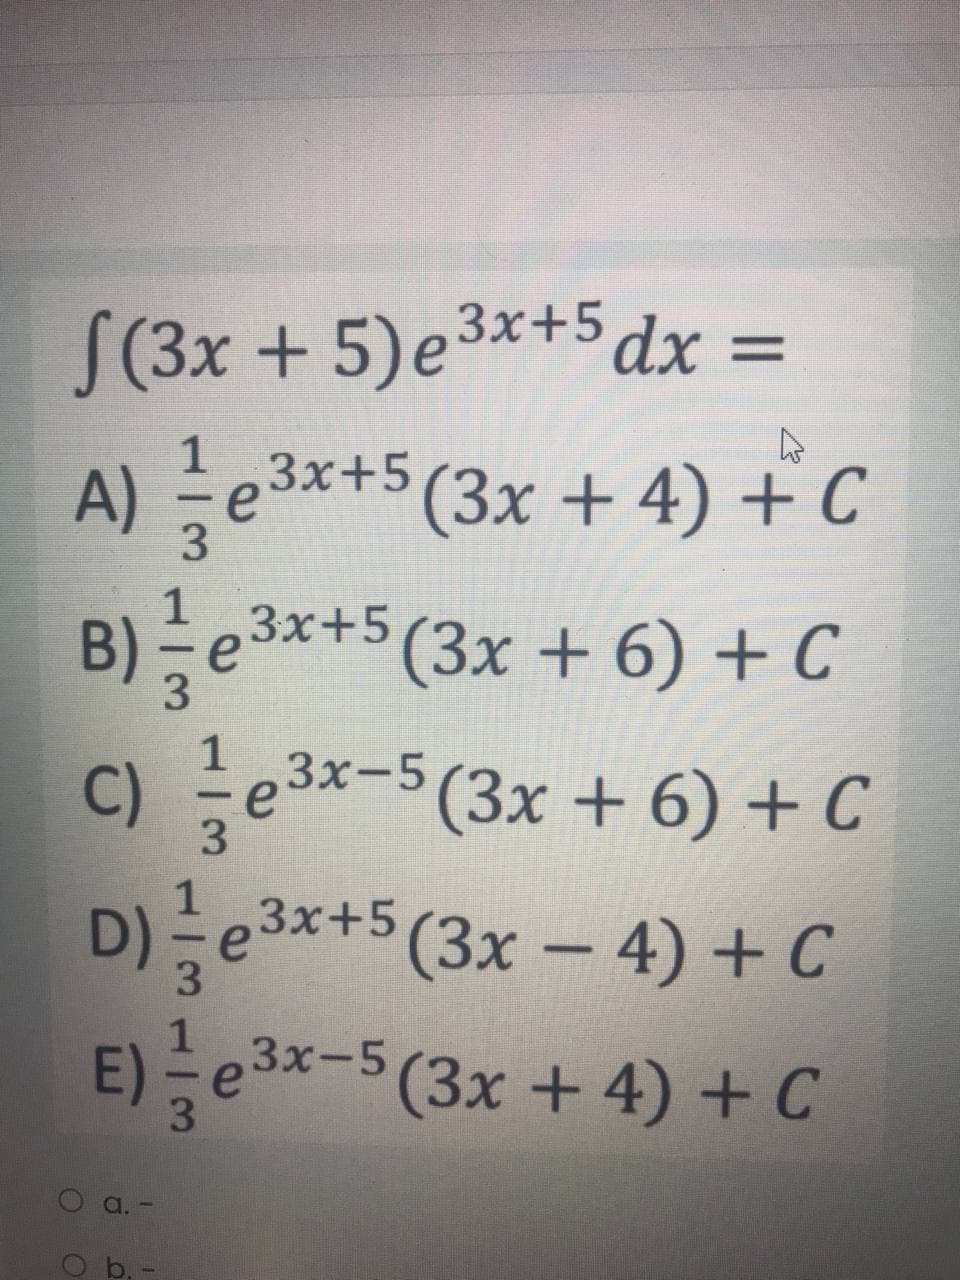 S(3x + 5)e3x+5 dx =
1
A) e3*+5 (3x + 4) + C
B)늘e3x+5 (3x + 6) +C
c) 글e3x-5(3x + 6) + C
D)글e3x+5 (3x-4) +C
E)능
Зx+5
1
3.
3.
3x-5 (3x + 4)+C
O b,-
